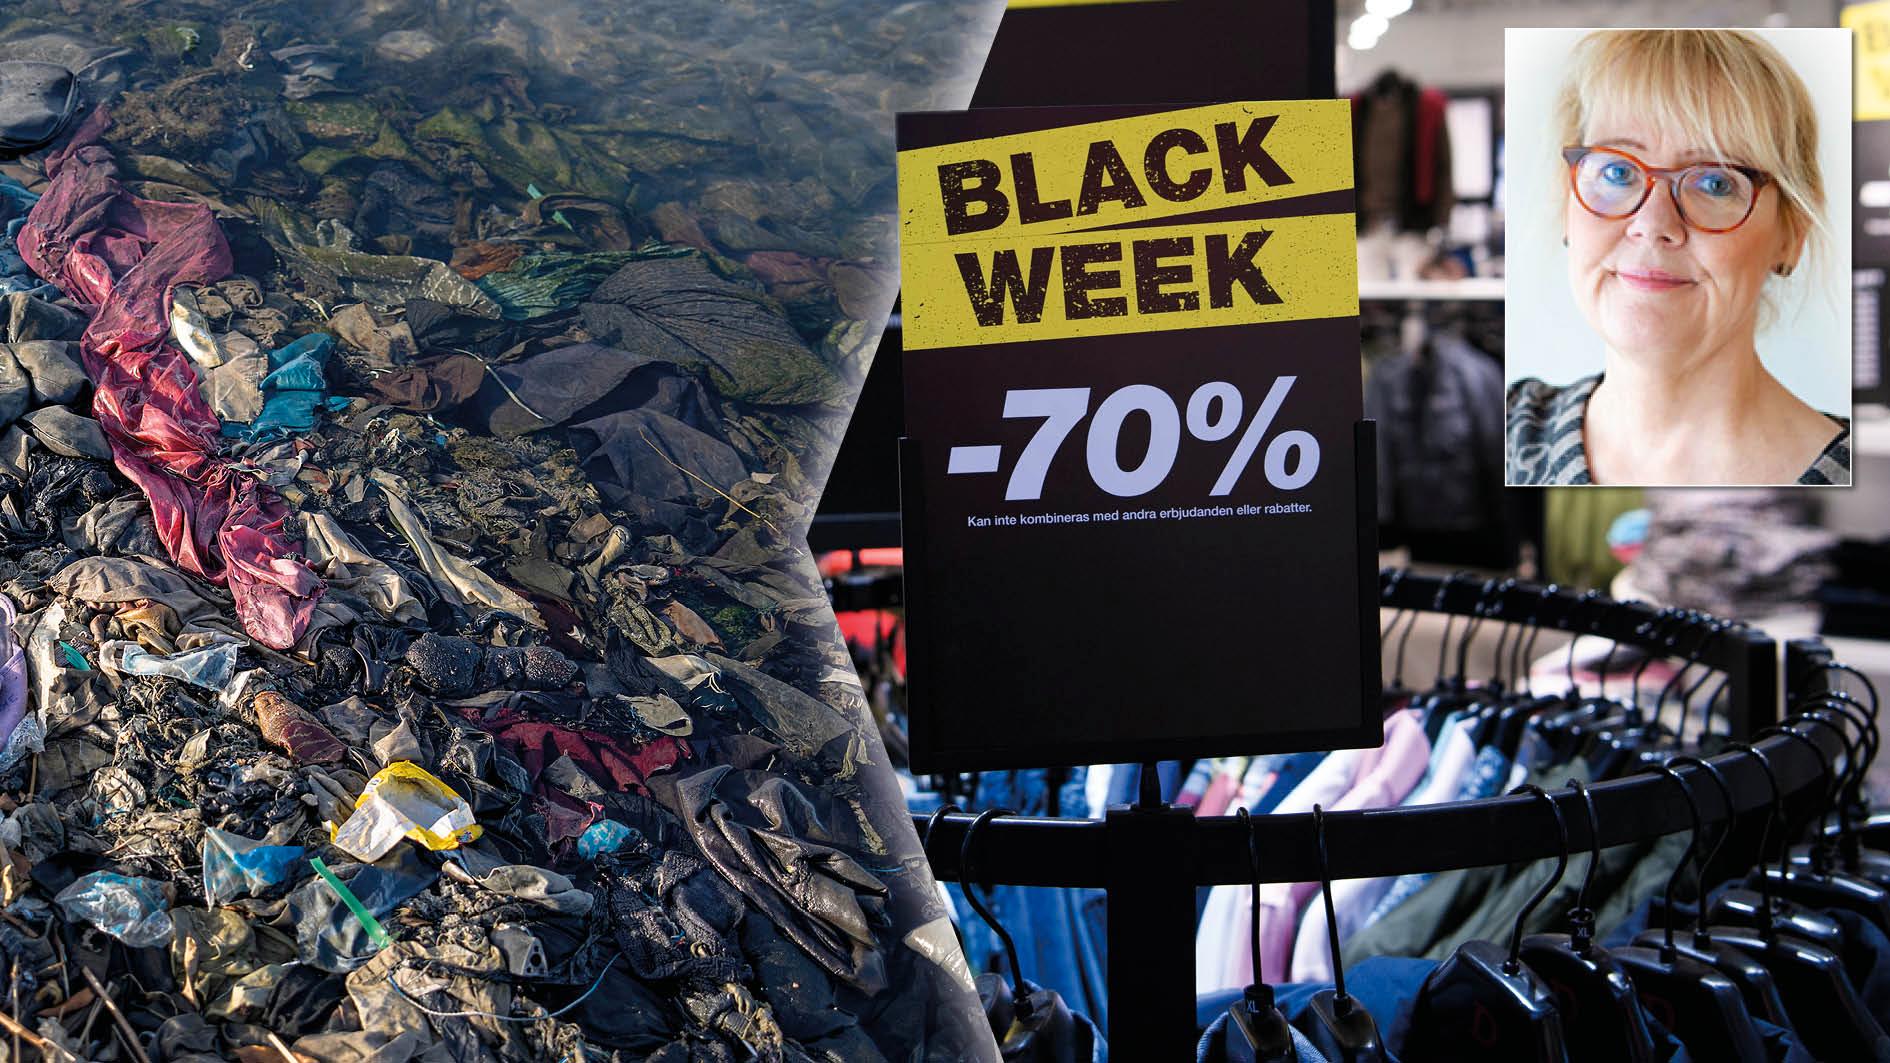 Konsumtionsmönstren när det gäller kläder måste förändras. Black Week som syftar till ökad konsumtion är otidsenlig och ansvarslös. I stället behöver företag ta större ansvar för att minska och förändra klädkonsumtionen, skriver Karin M. Ekström, professor i företagsekonomi.